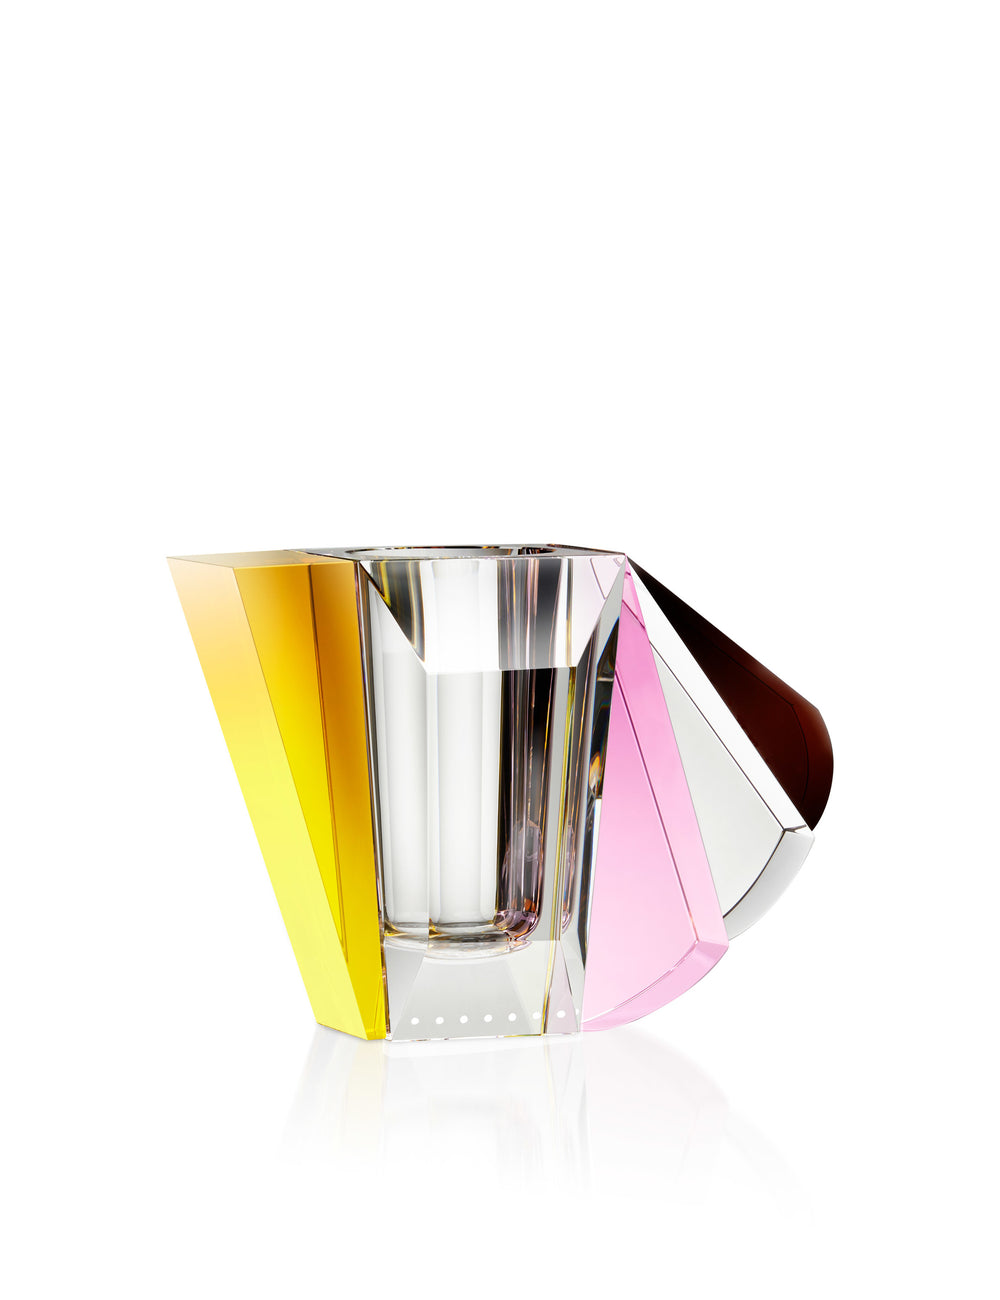 Vase i klar, brun, gul og lyserød krystal på hvid baggrund.